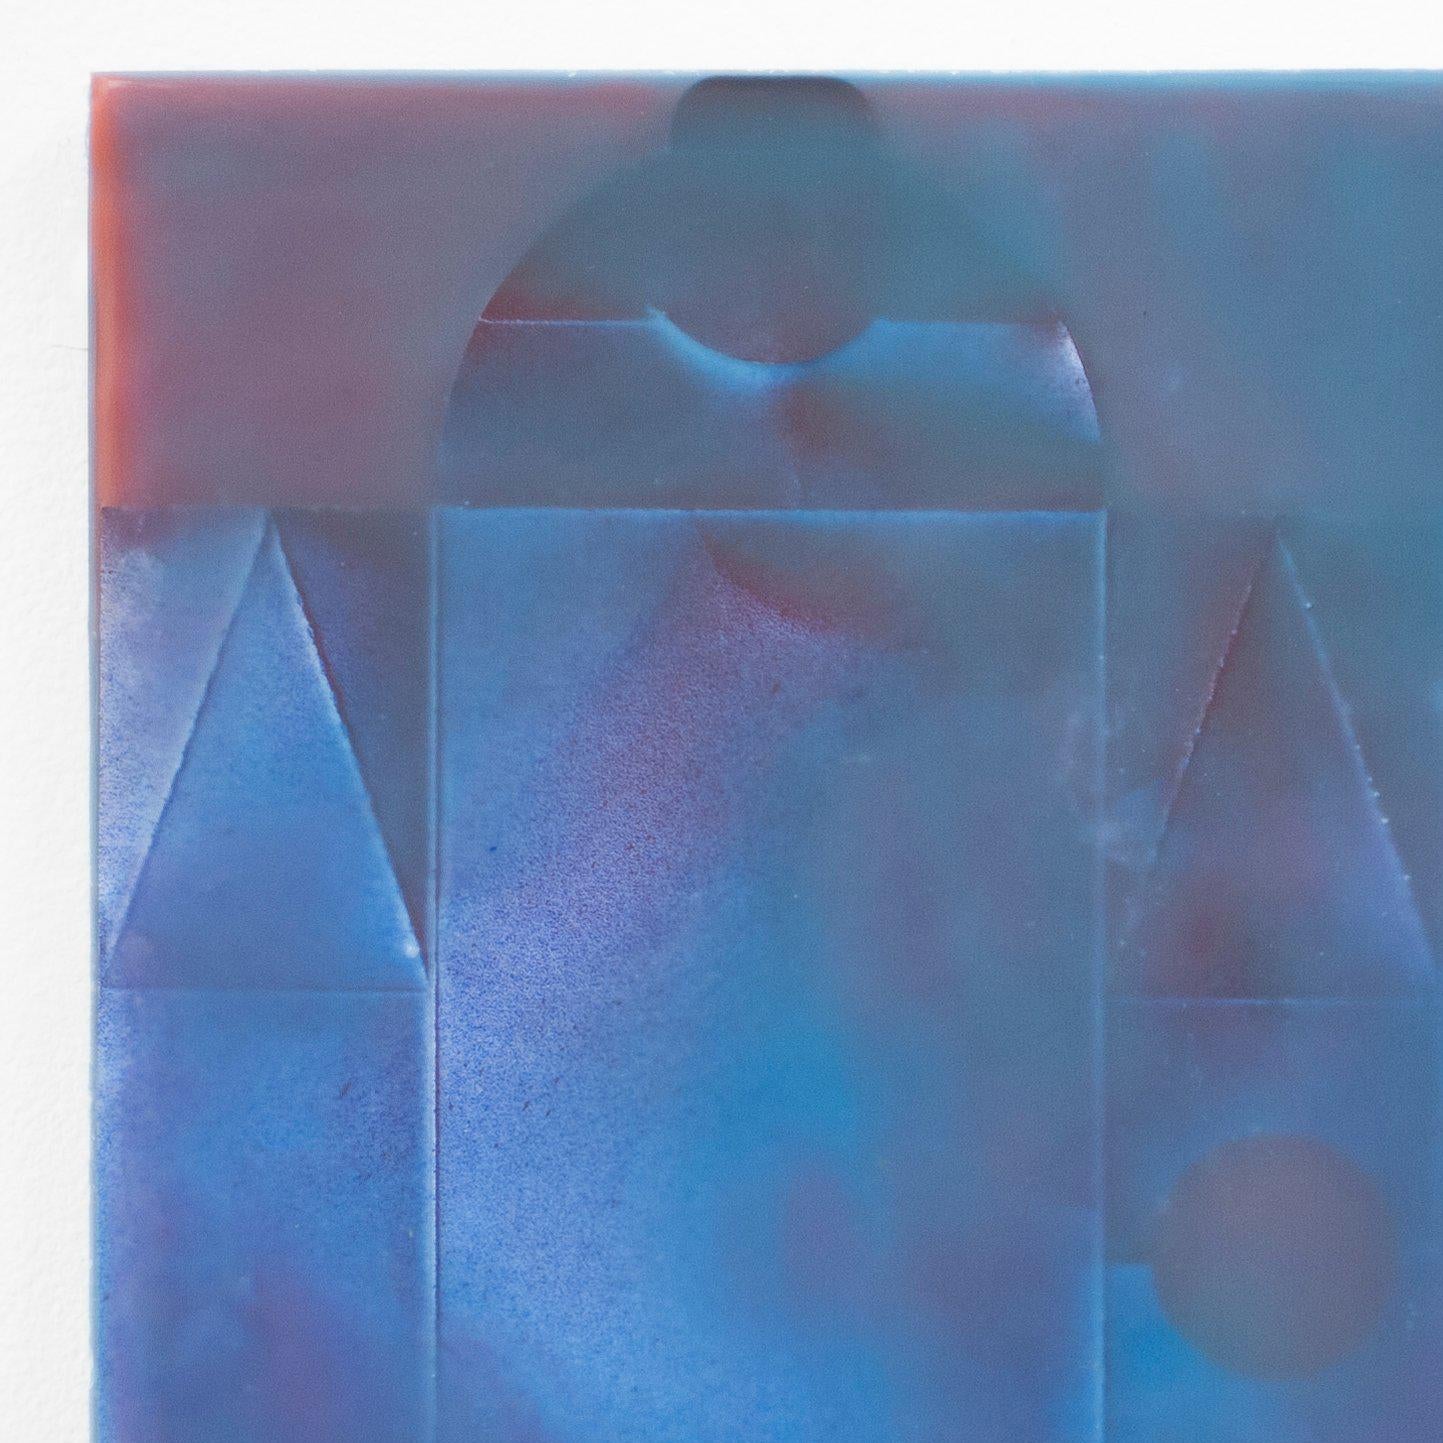 Cette peinture en cire coulée par Joanne Ungar est composée de formes géométriques d'emballages recyclés, superposées et infusées de cire pigmentée.  Le bleu et le violet violet de cette cire pigmentée, réalisée par Joanne Ungar, ont une qualité